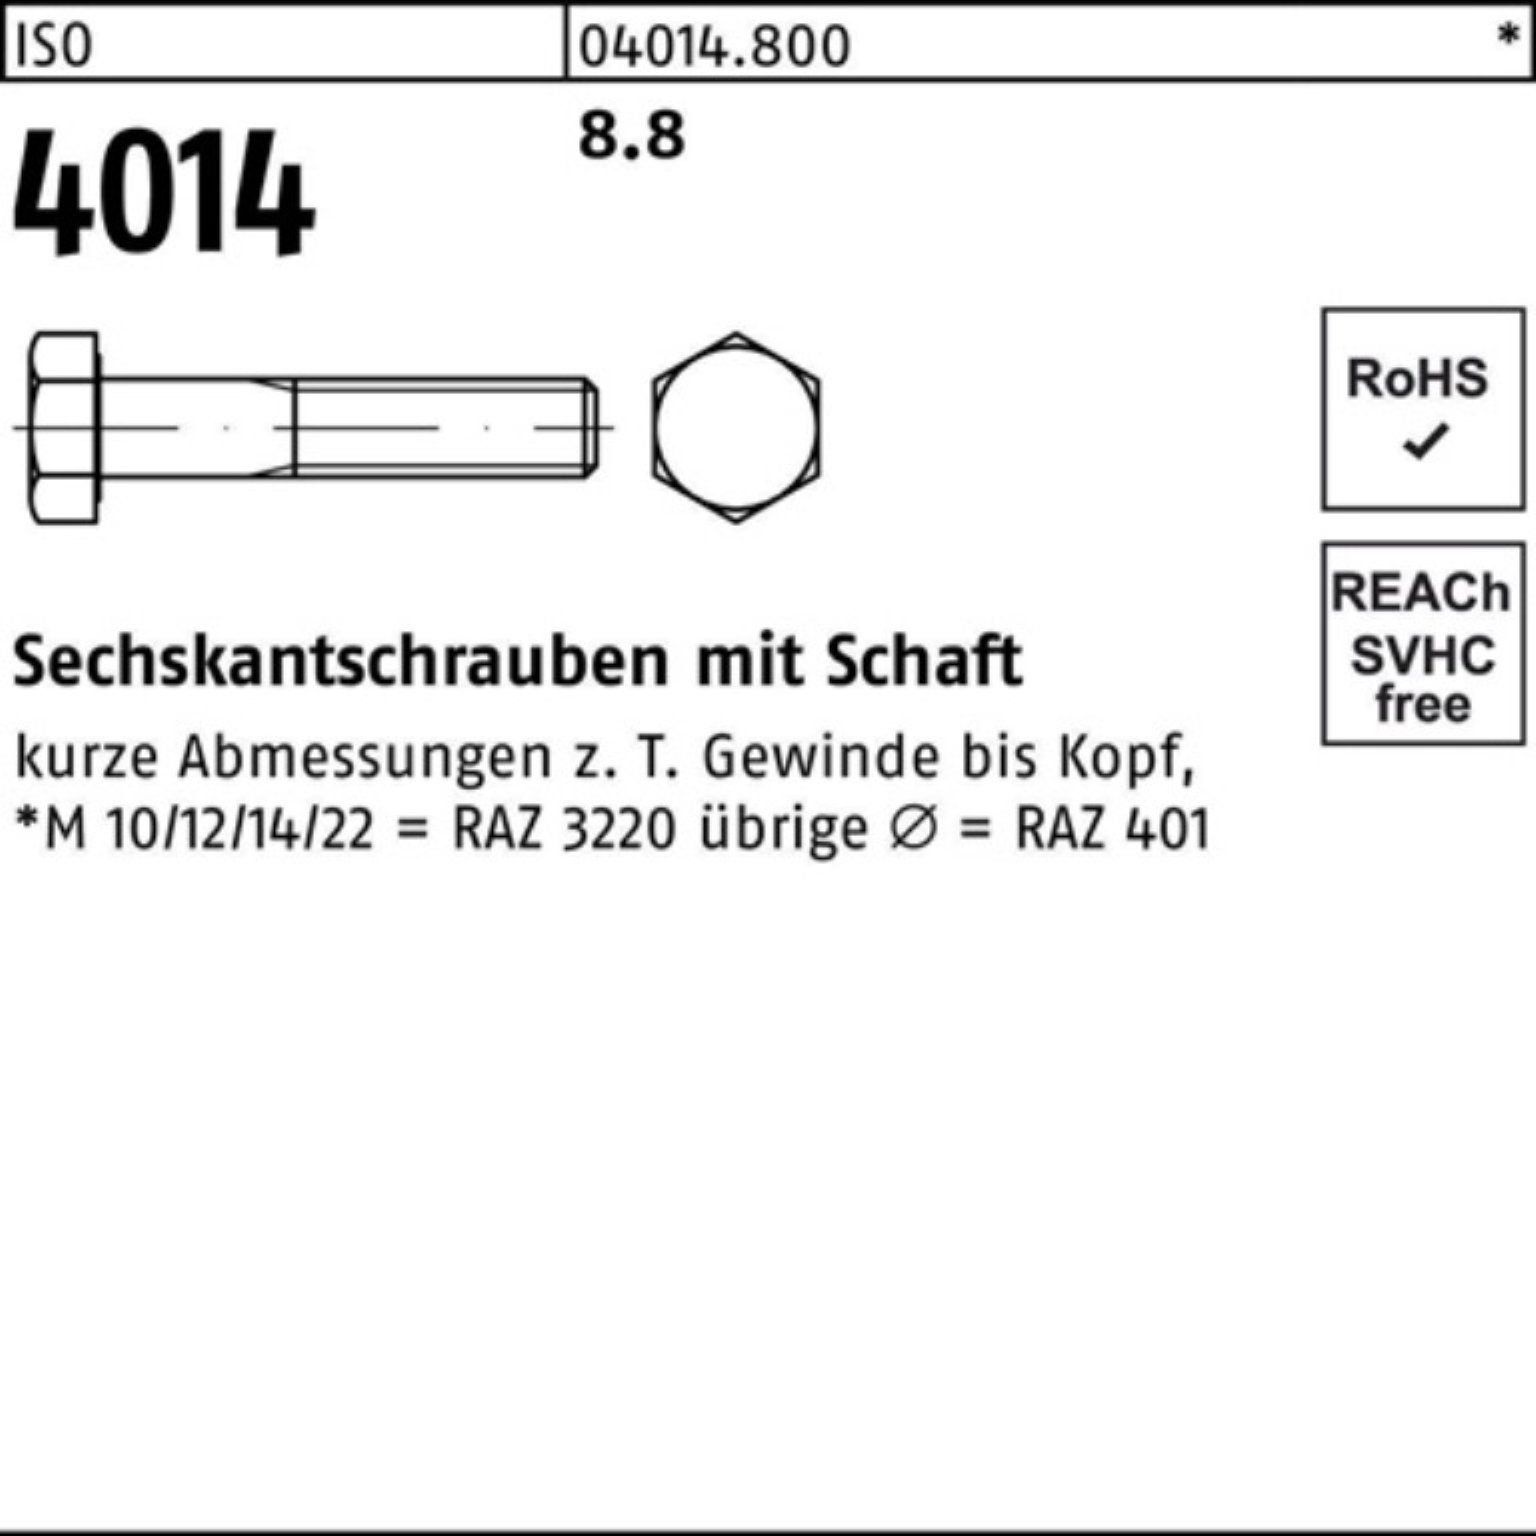 Bufab Sechskantschraube 100er 8.8 ISO ISO Pack 95 Stück Sechskantschraube 4014 M16x Schaft 25